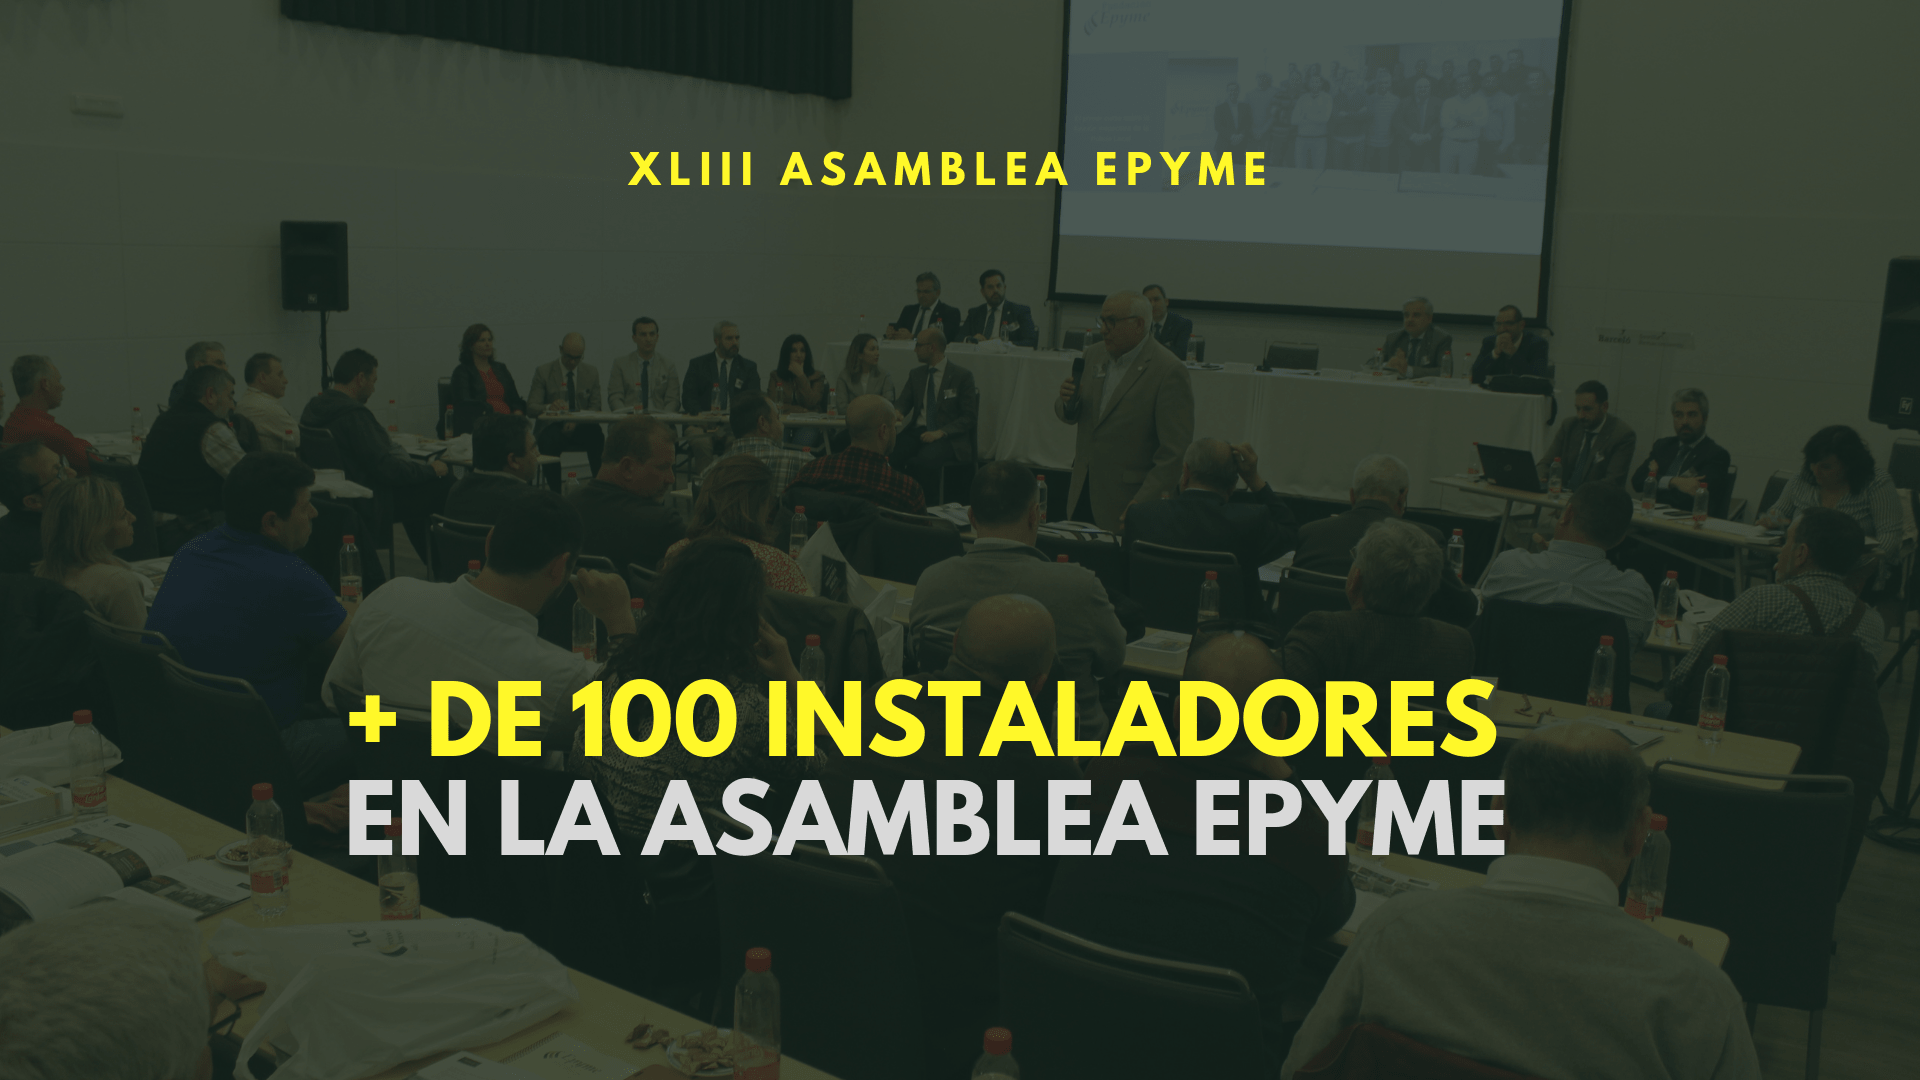 Más de 100 empresas instaladoras en la Asamblea Epyme